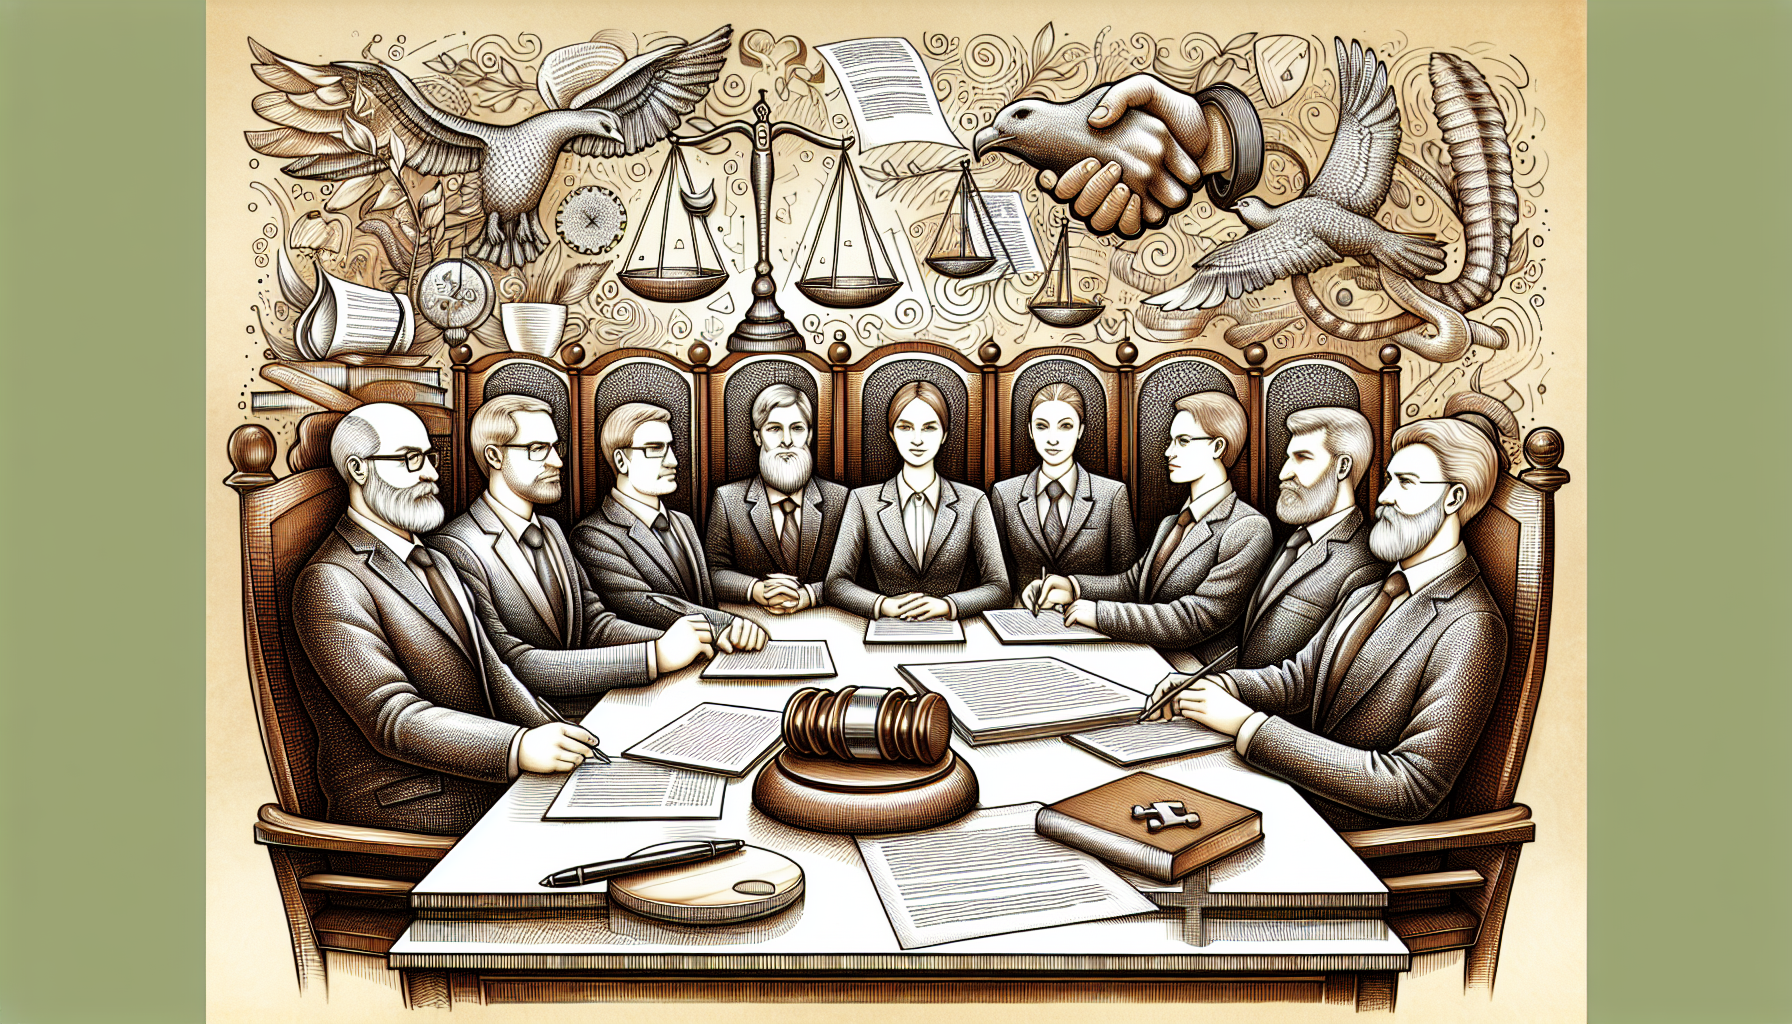 Ilustração de uma reunião entre sócios em uma sociedade limitada (LTDA)